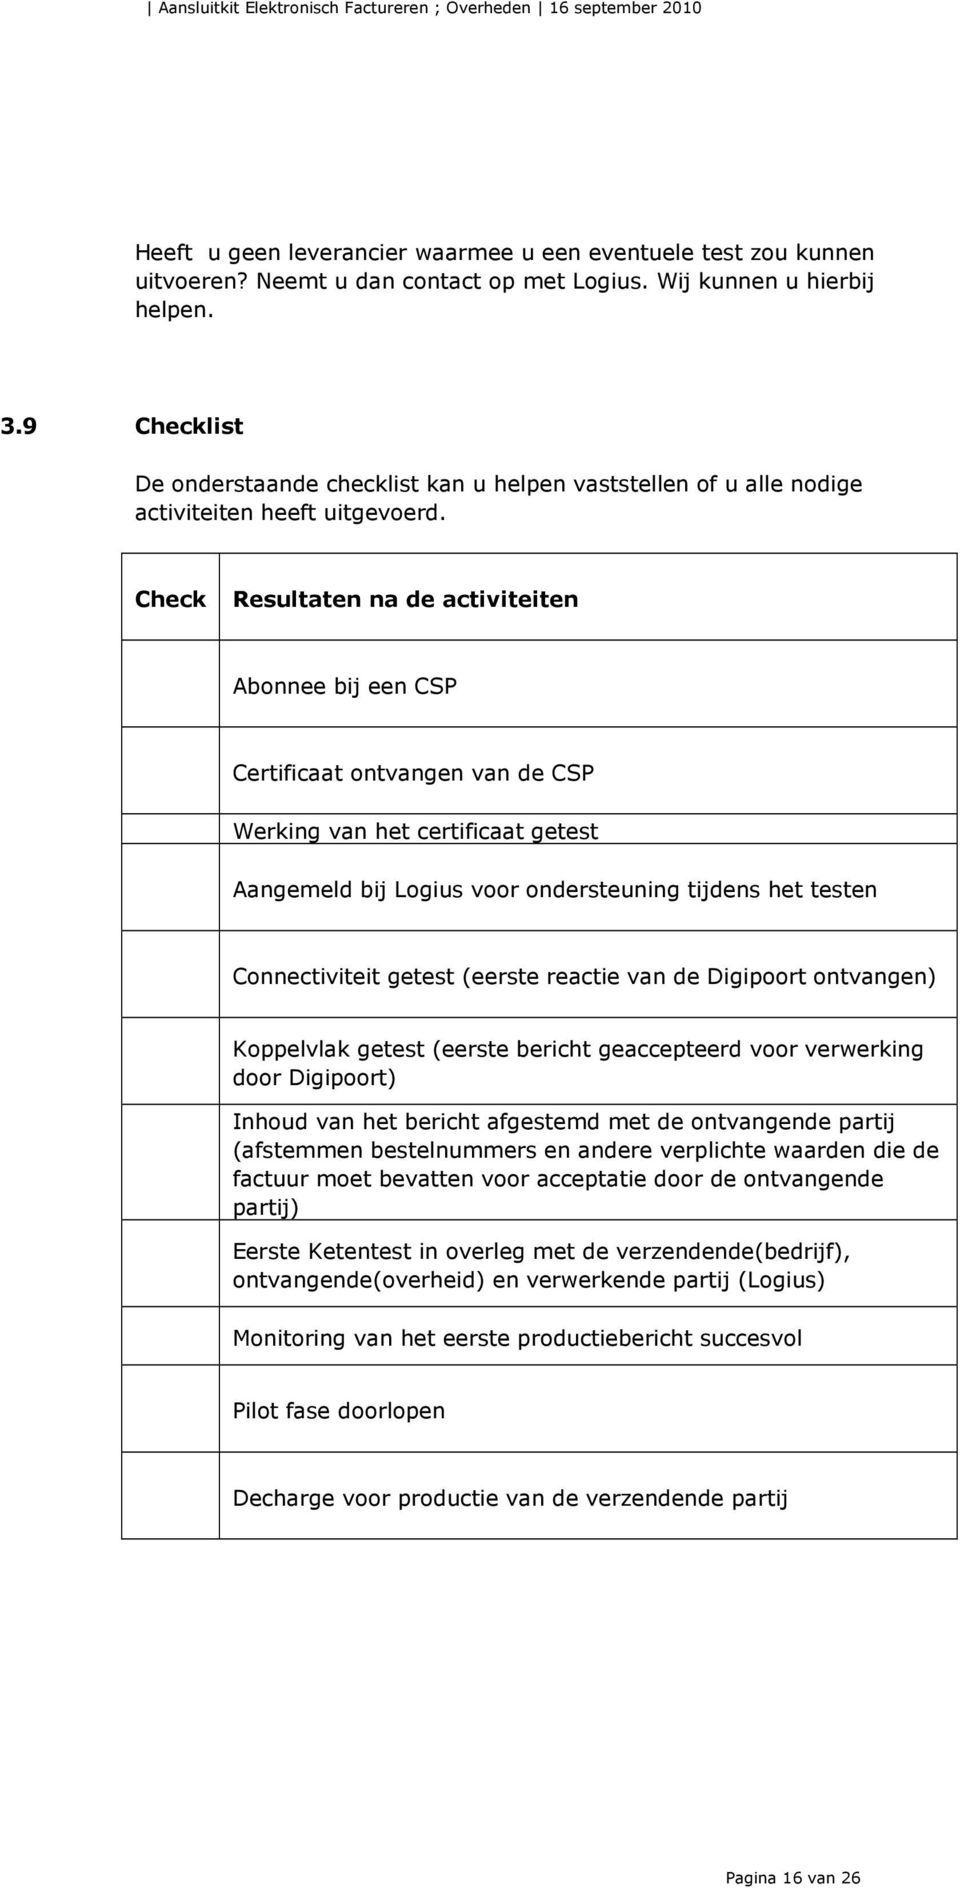 Check Resultaten na de activiteiten Abonnee bij een CSP Certificaat ontvangen van de CSP Werking van het certificaat getest Aangemeld bij Logius voor ondersteuning tijdens het testen Connectiviteit